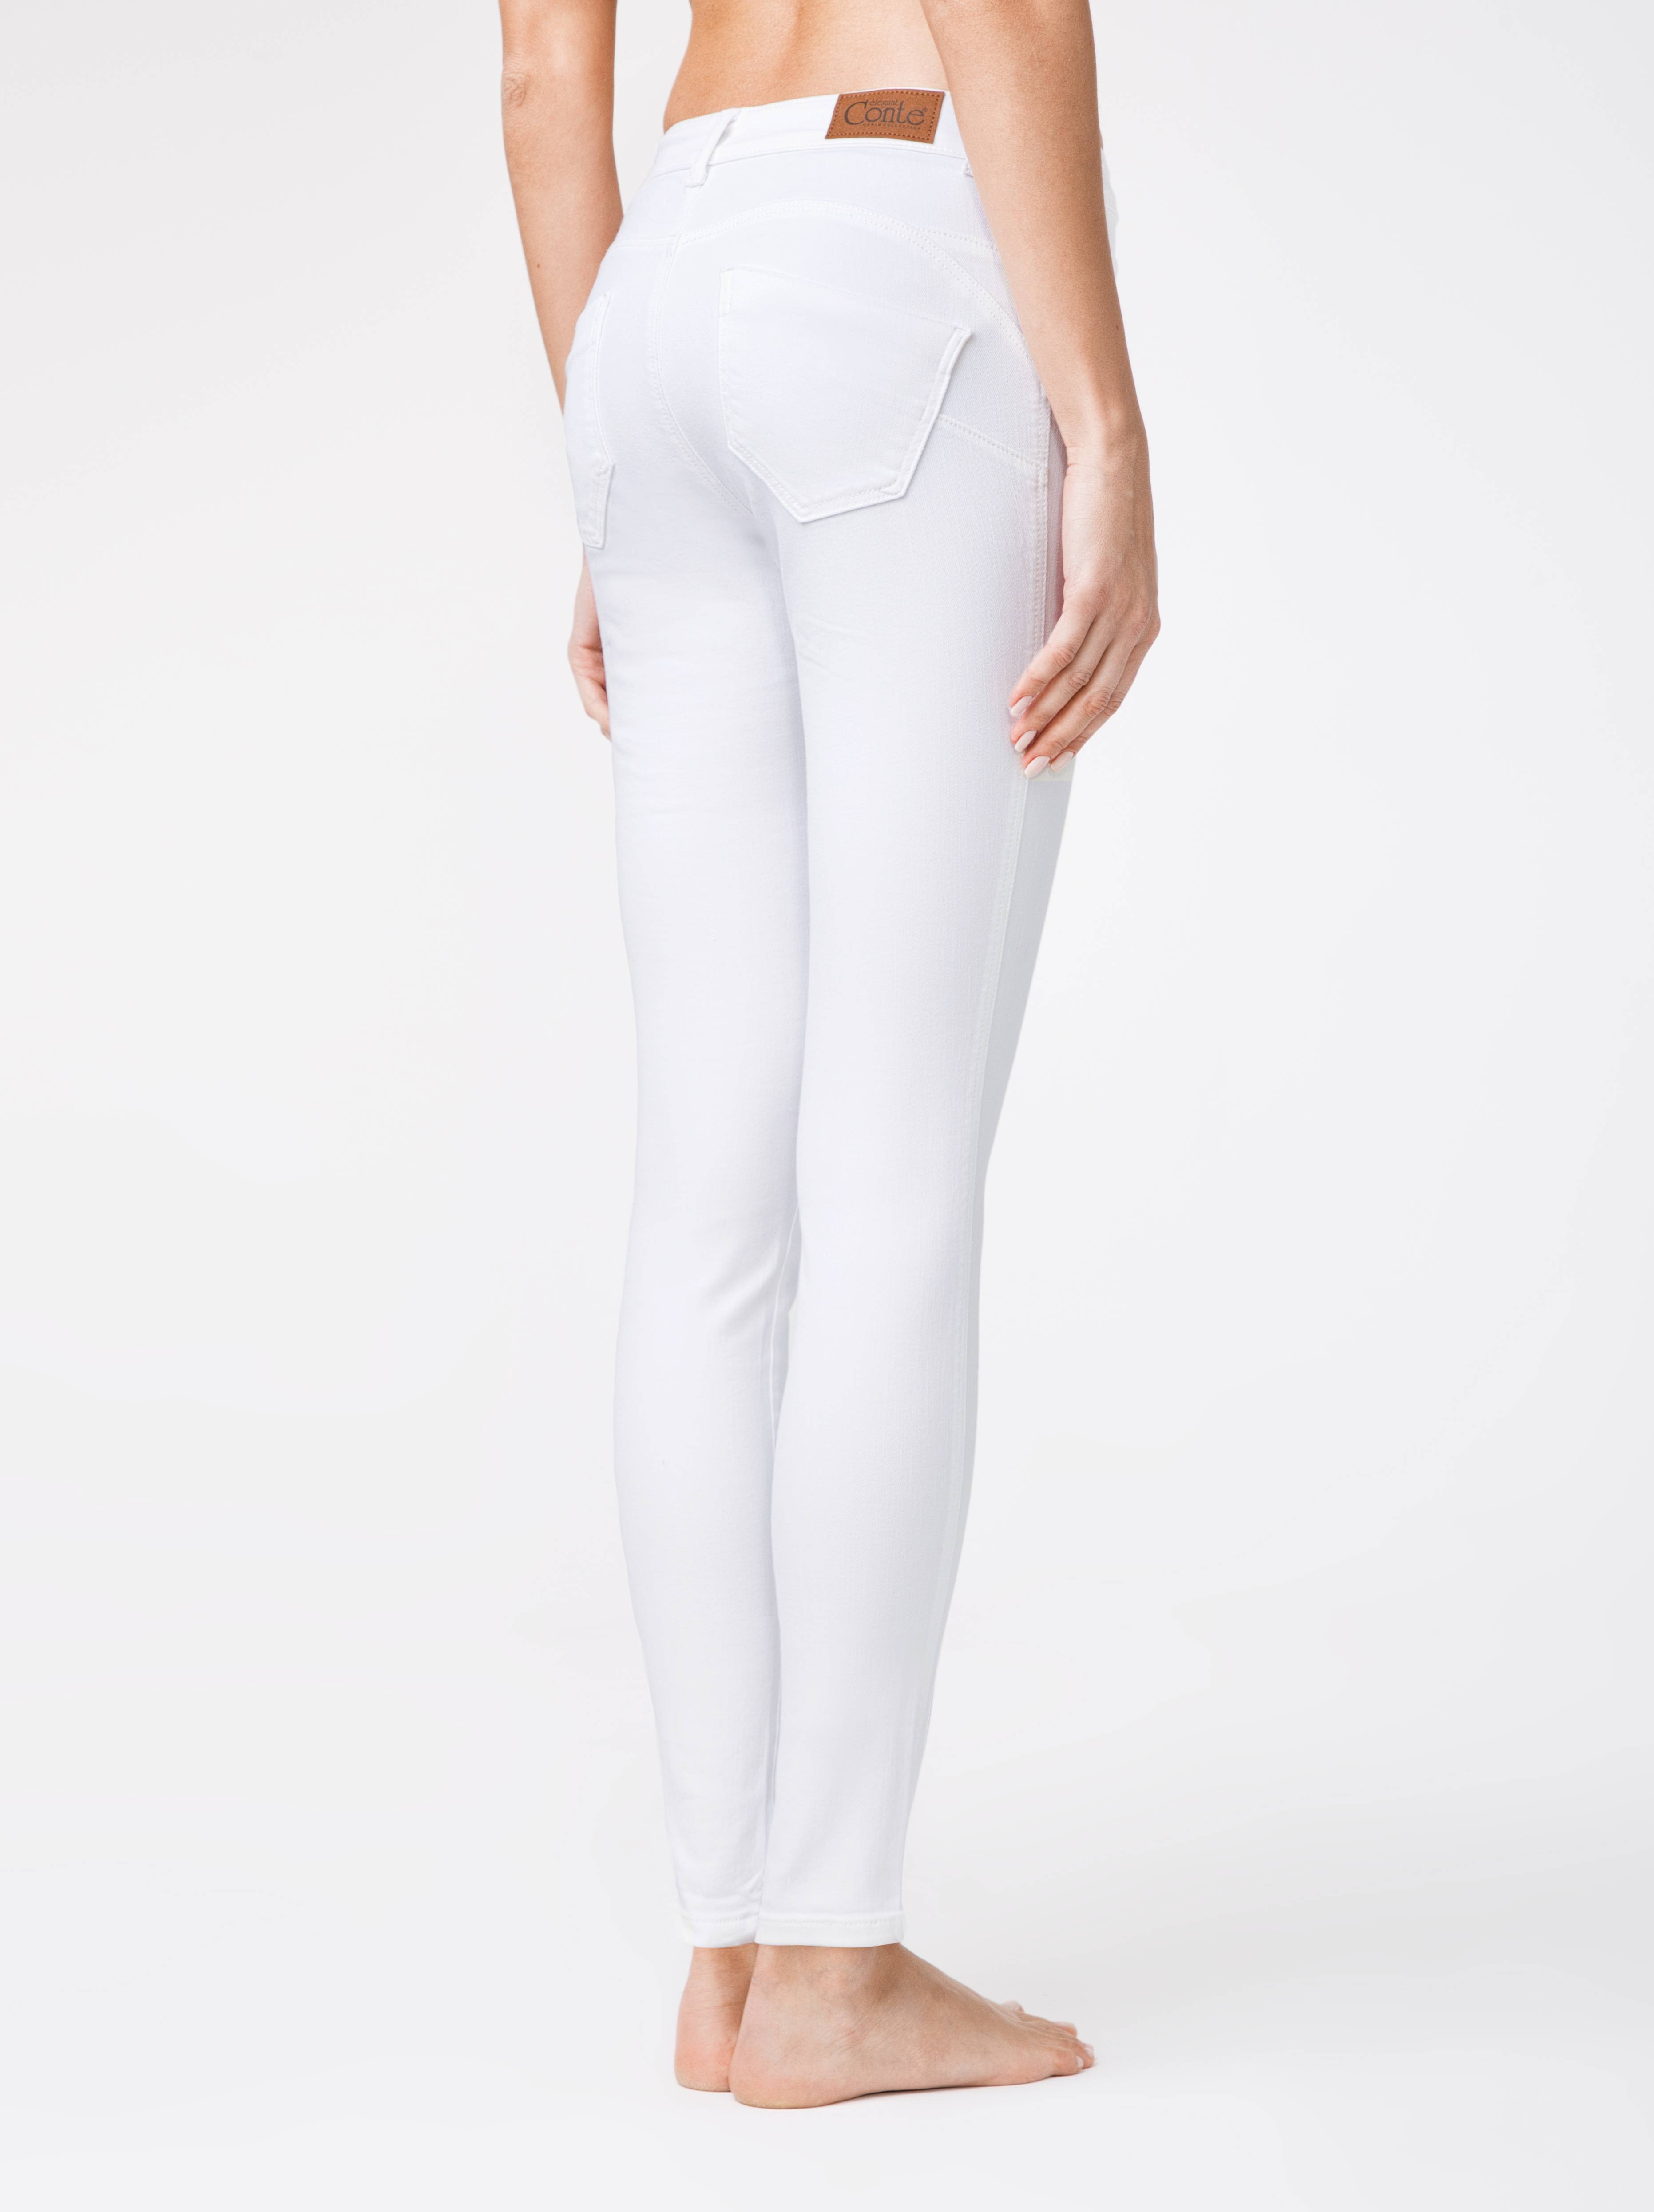 Ультракомфортные моделирующие джинсы CON-128 Conte ⭐️, цвет white, размер 164-102 - фото 1